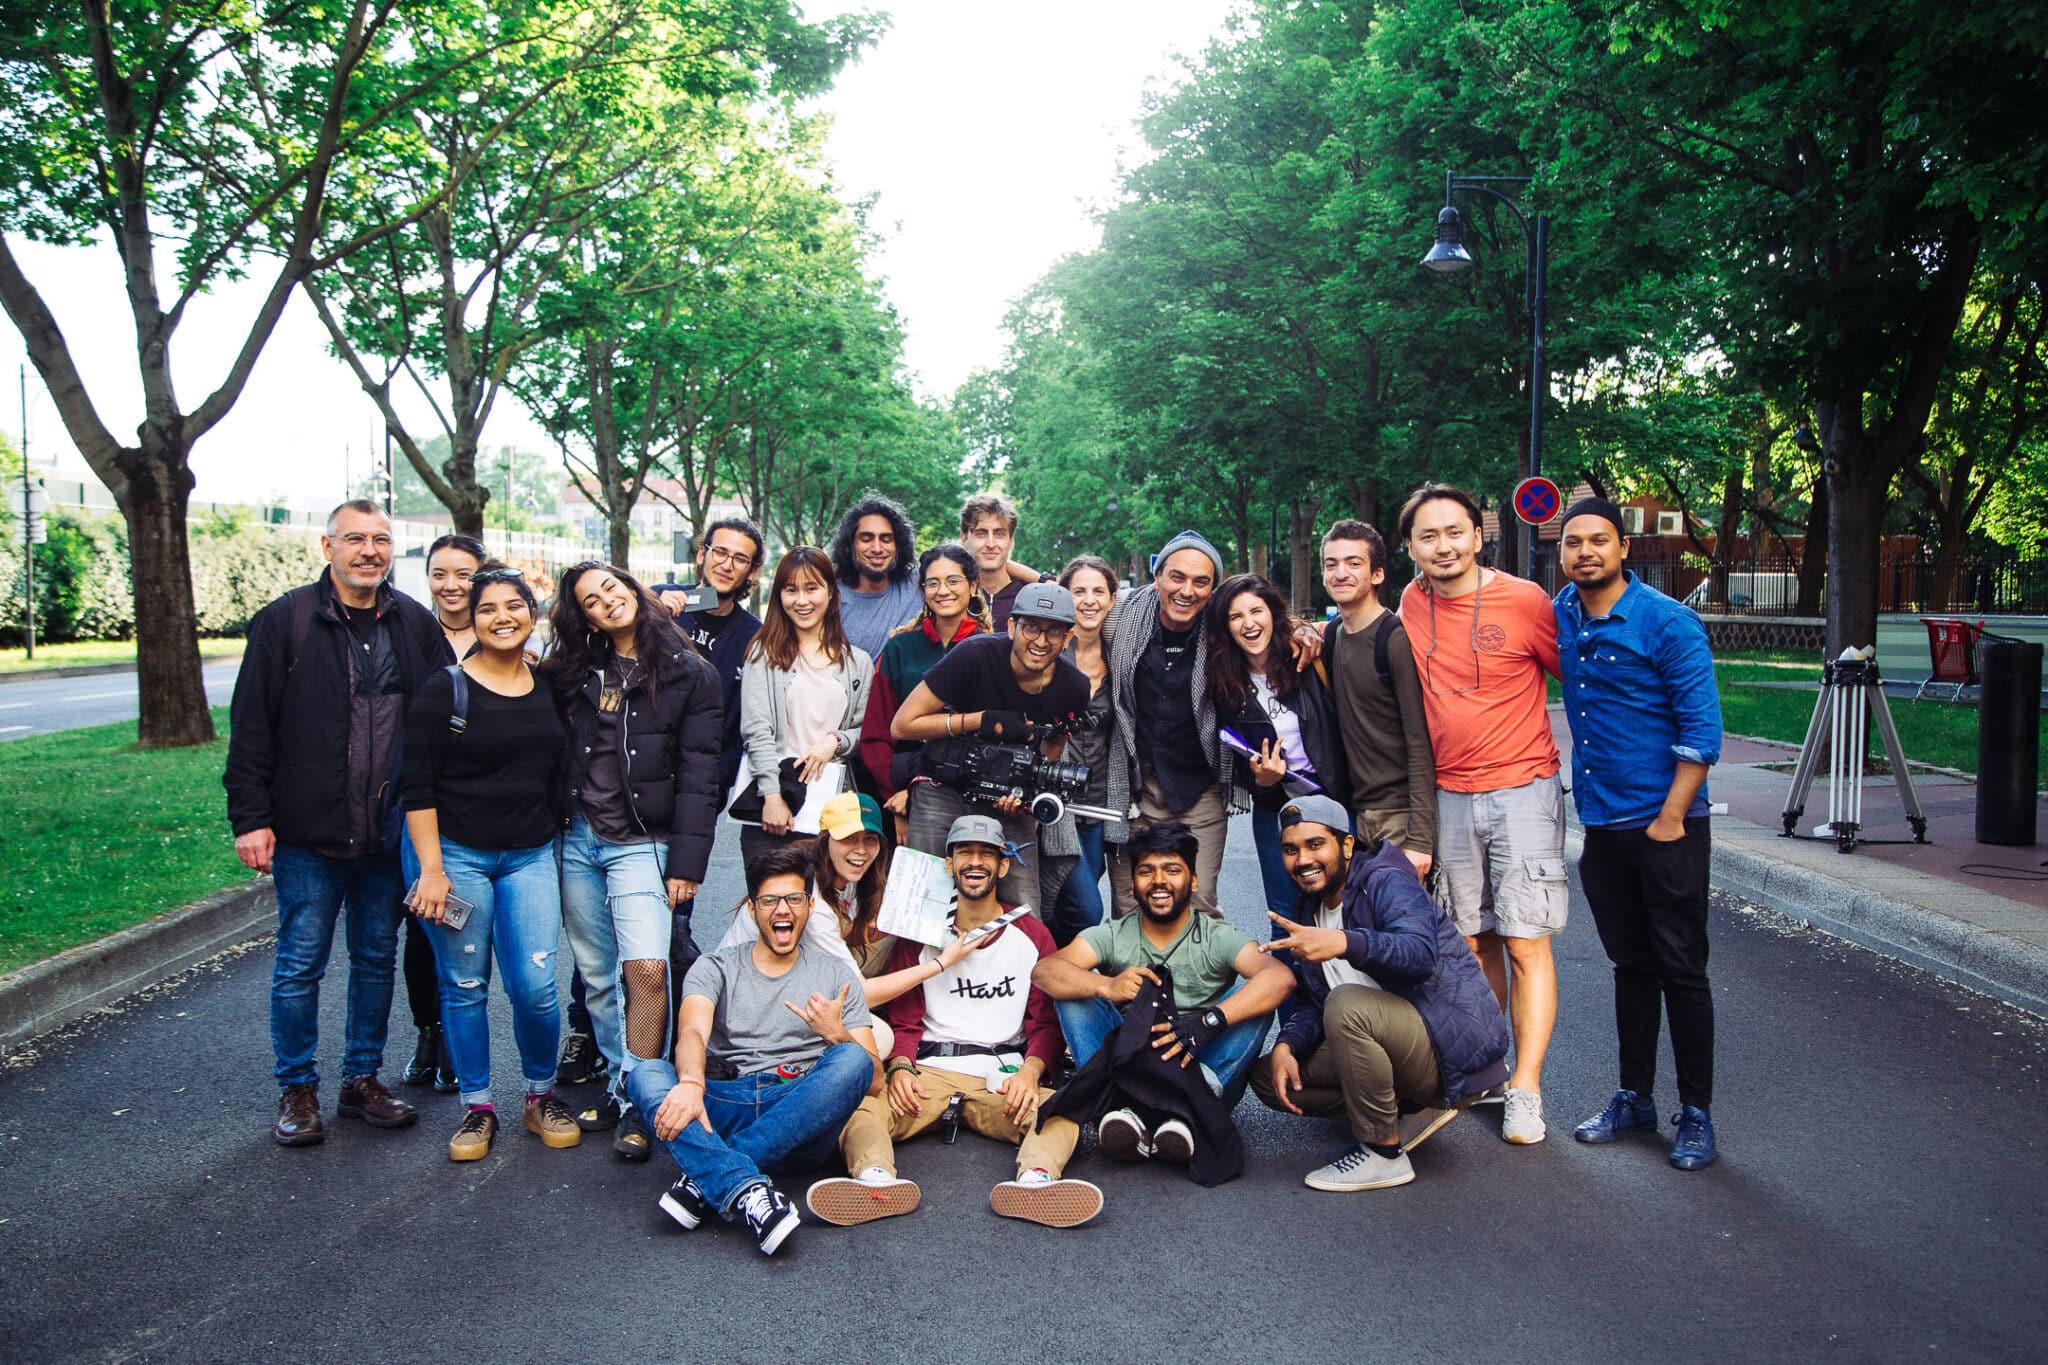 EICAR reçoit le label Bienvenue en France, gage de qualité de l'accueil des étudiants internationaux